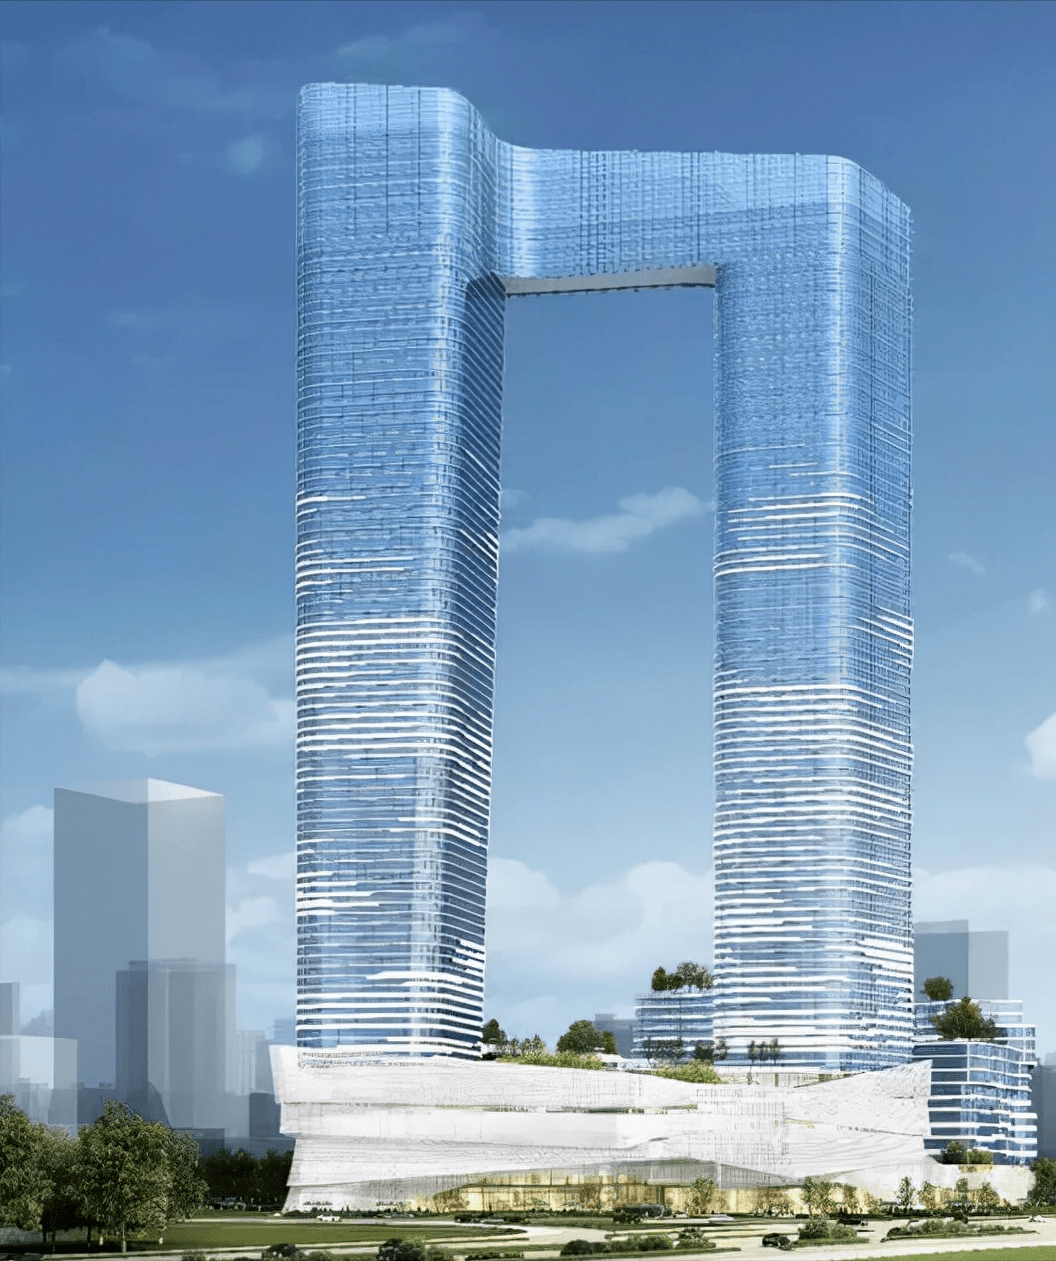 基建狂魔南通未来前十高楼中将拥有超级摩天楼